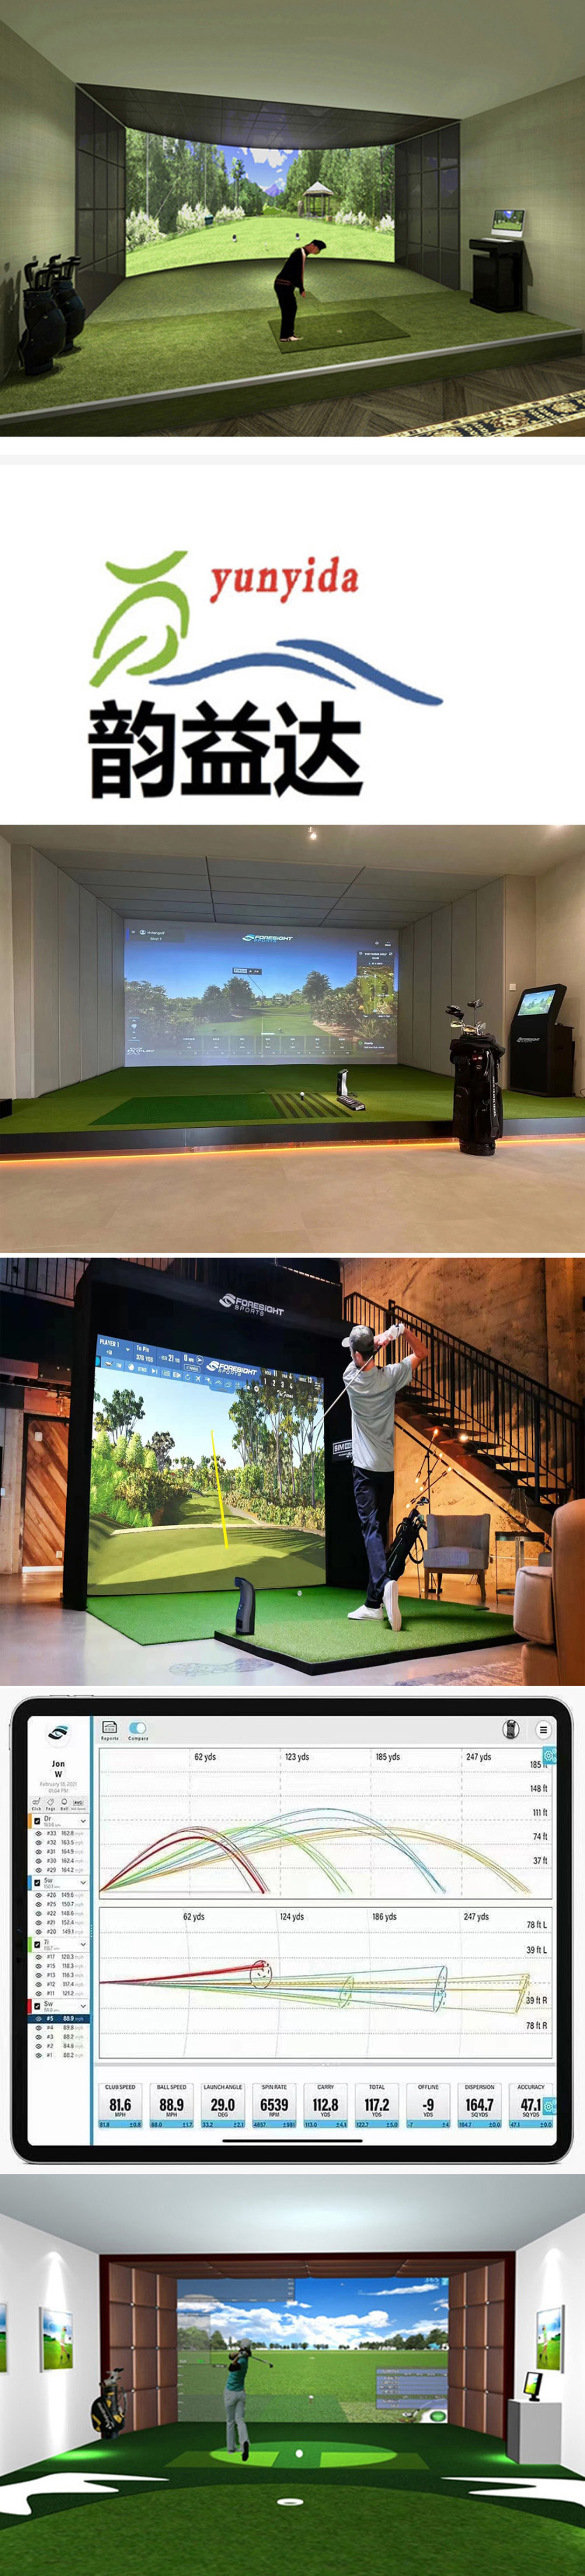 模拟室内高尔夫练习系统  2.jpg